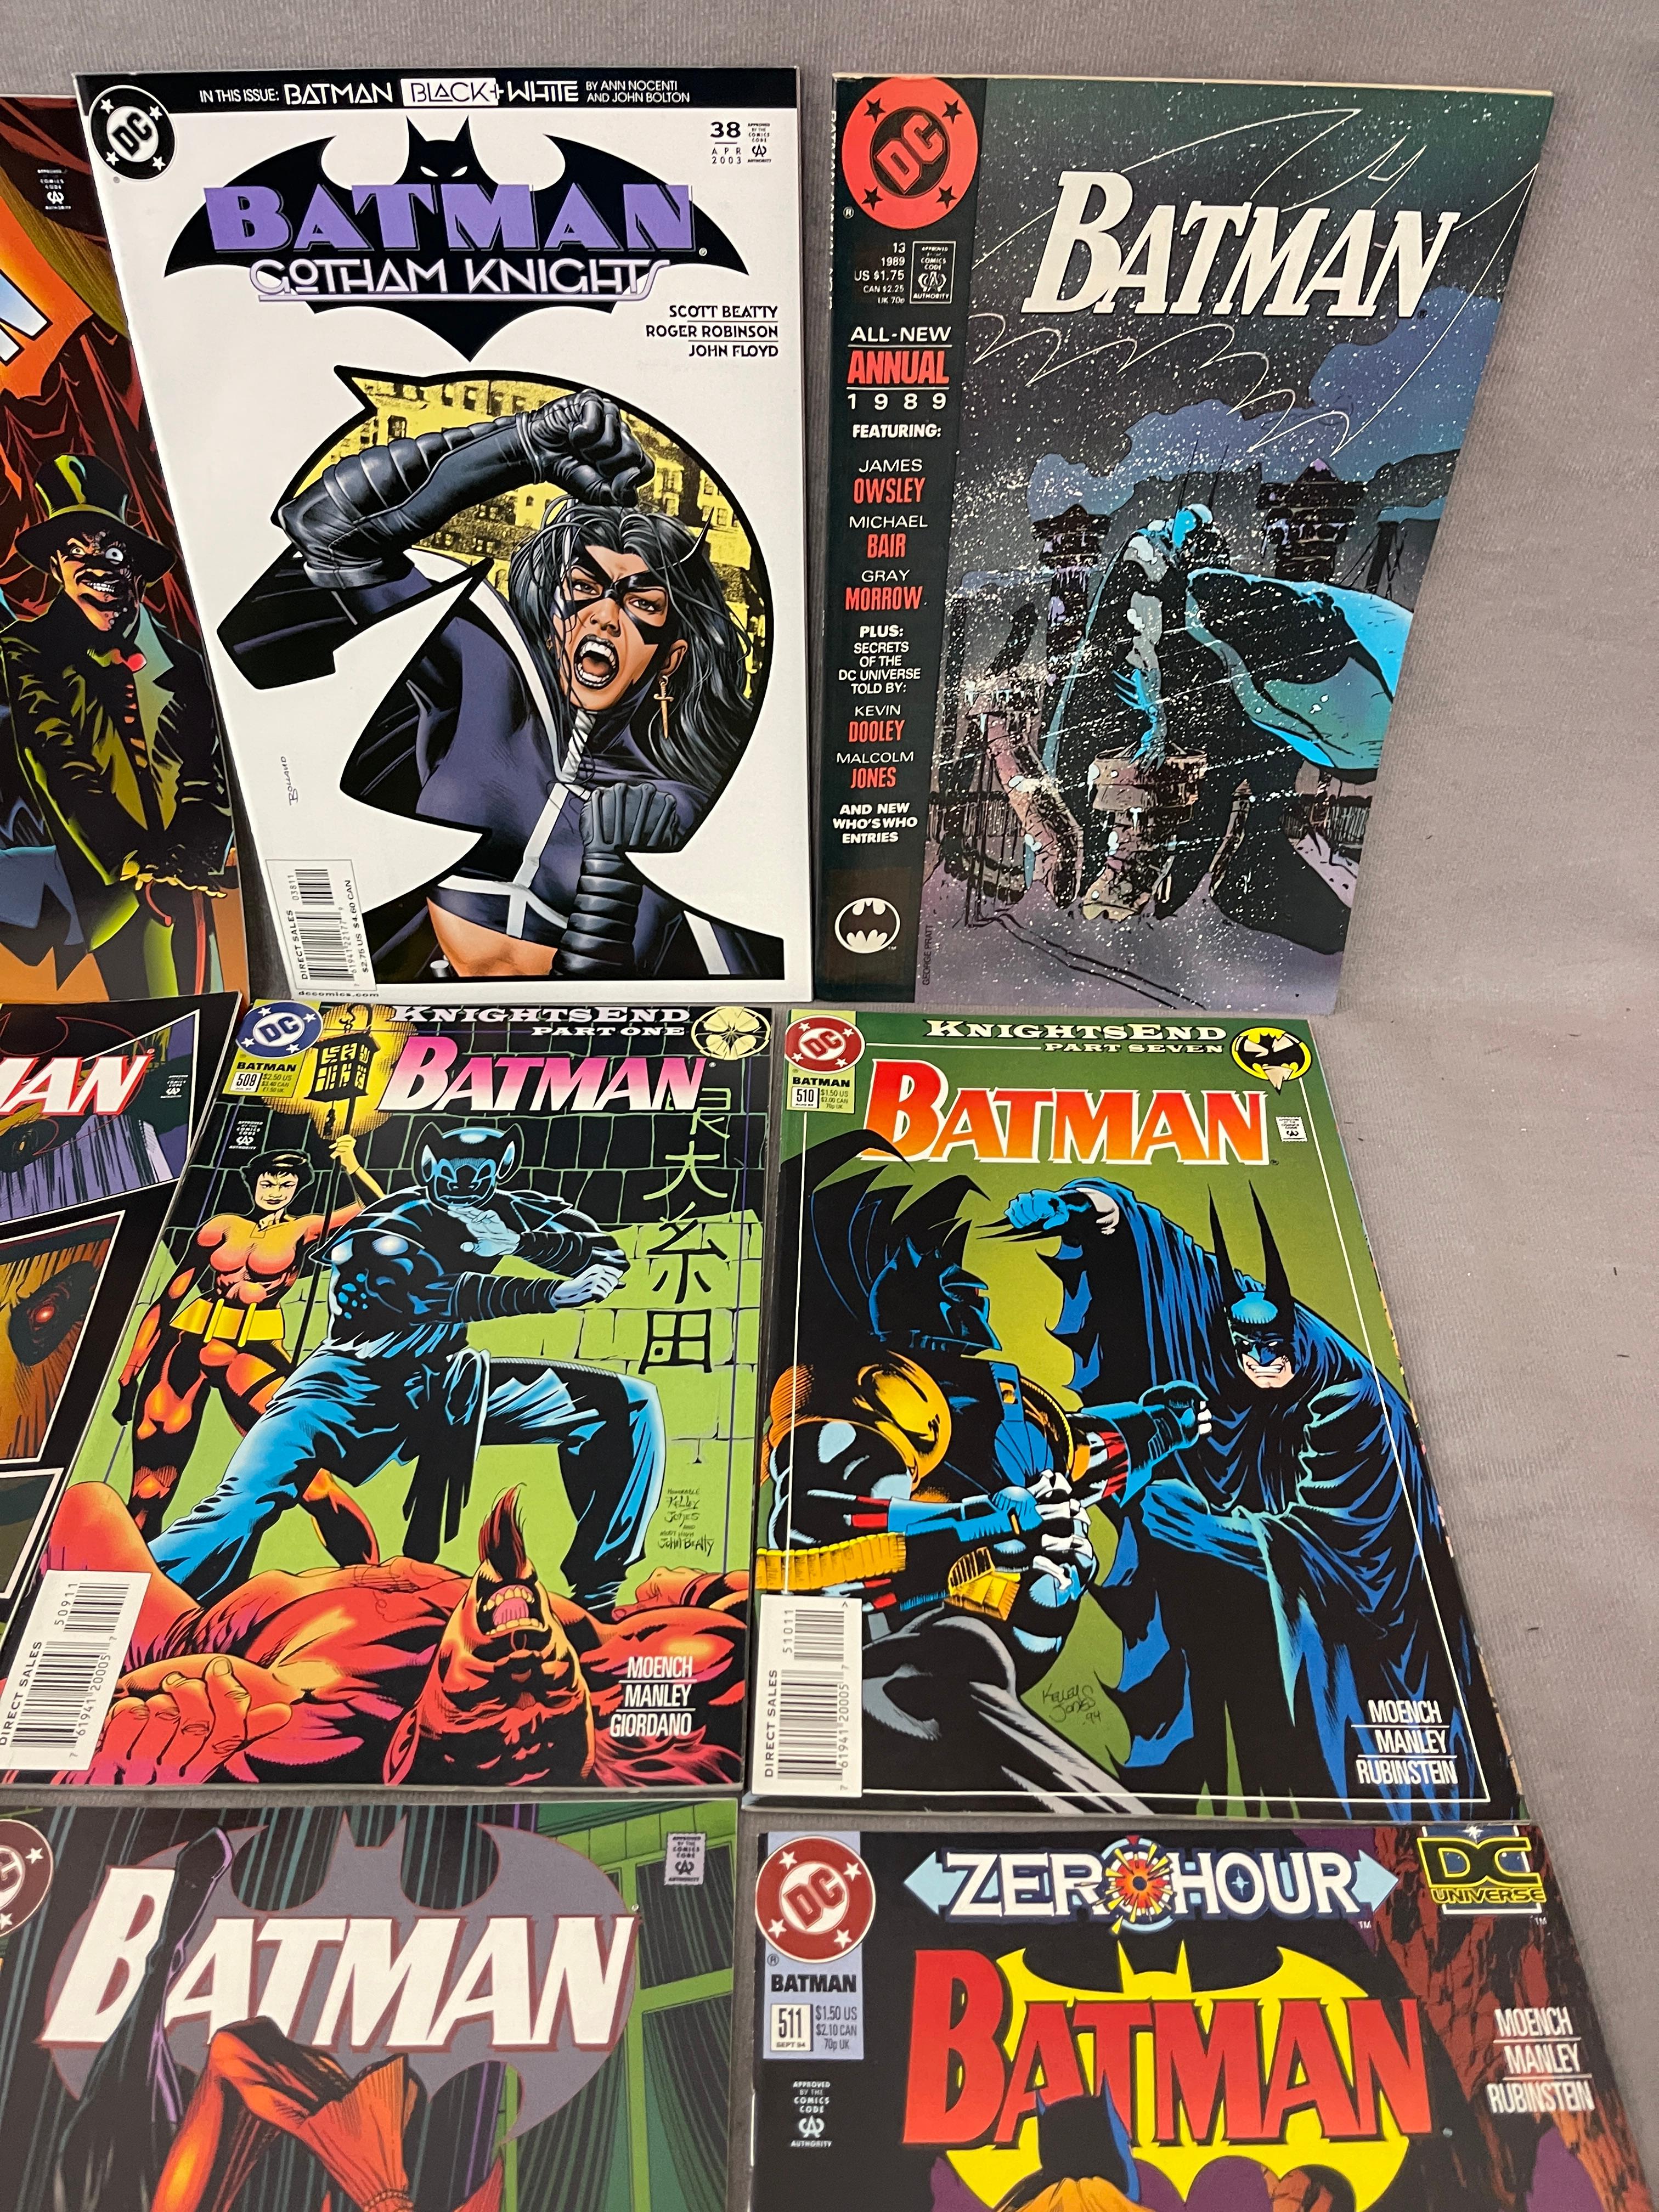 VINTAGE COMIC BOOK COLLECTION BATMAN DC COMICS LOT 14